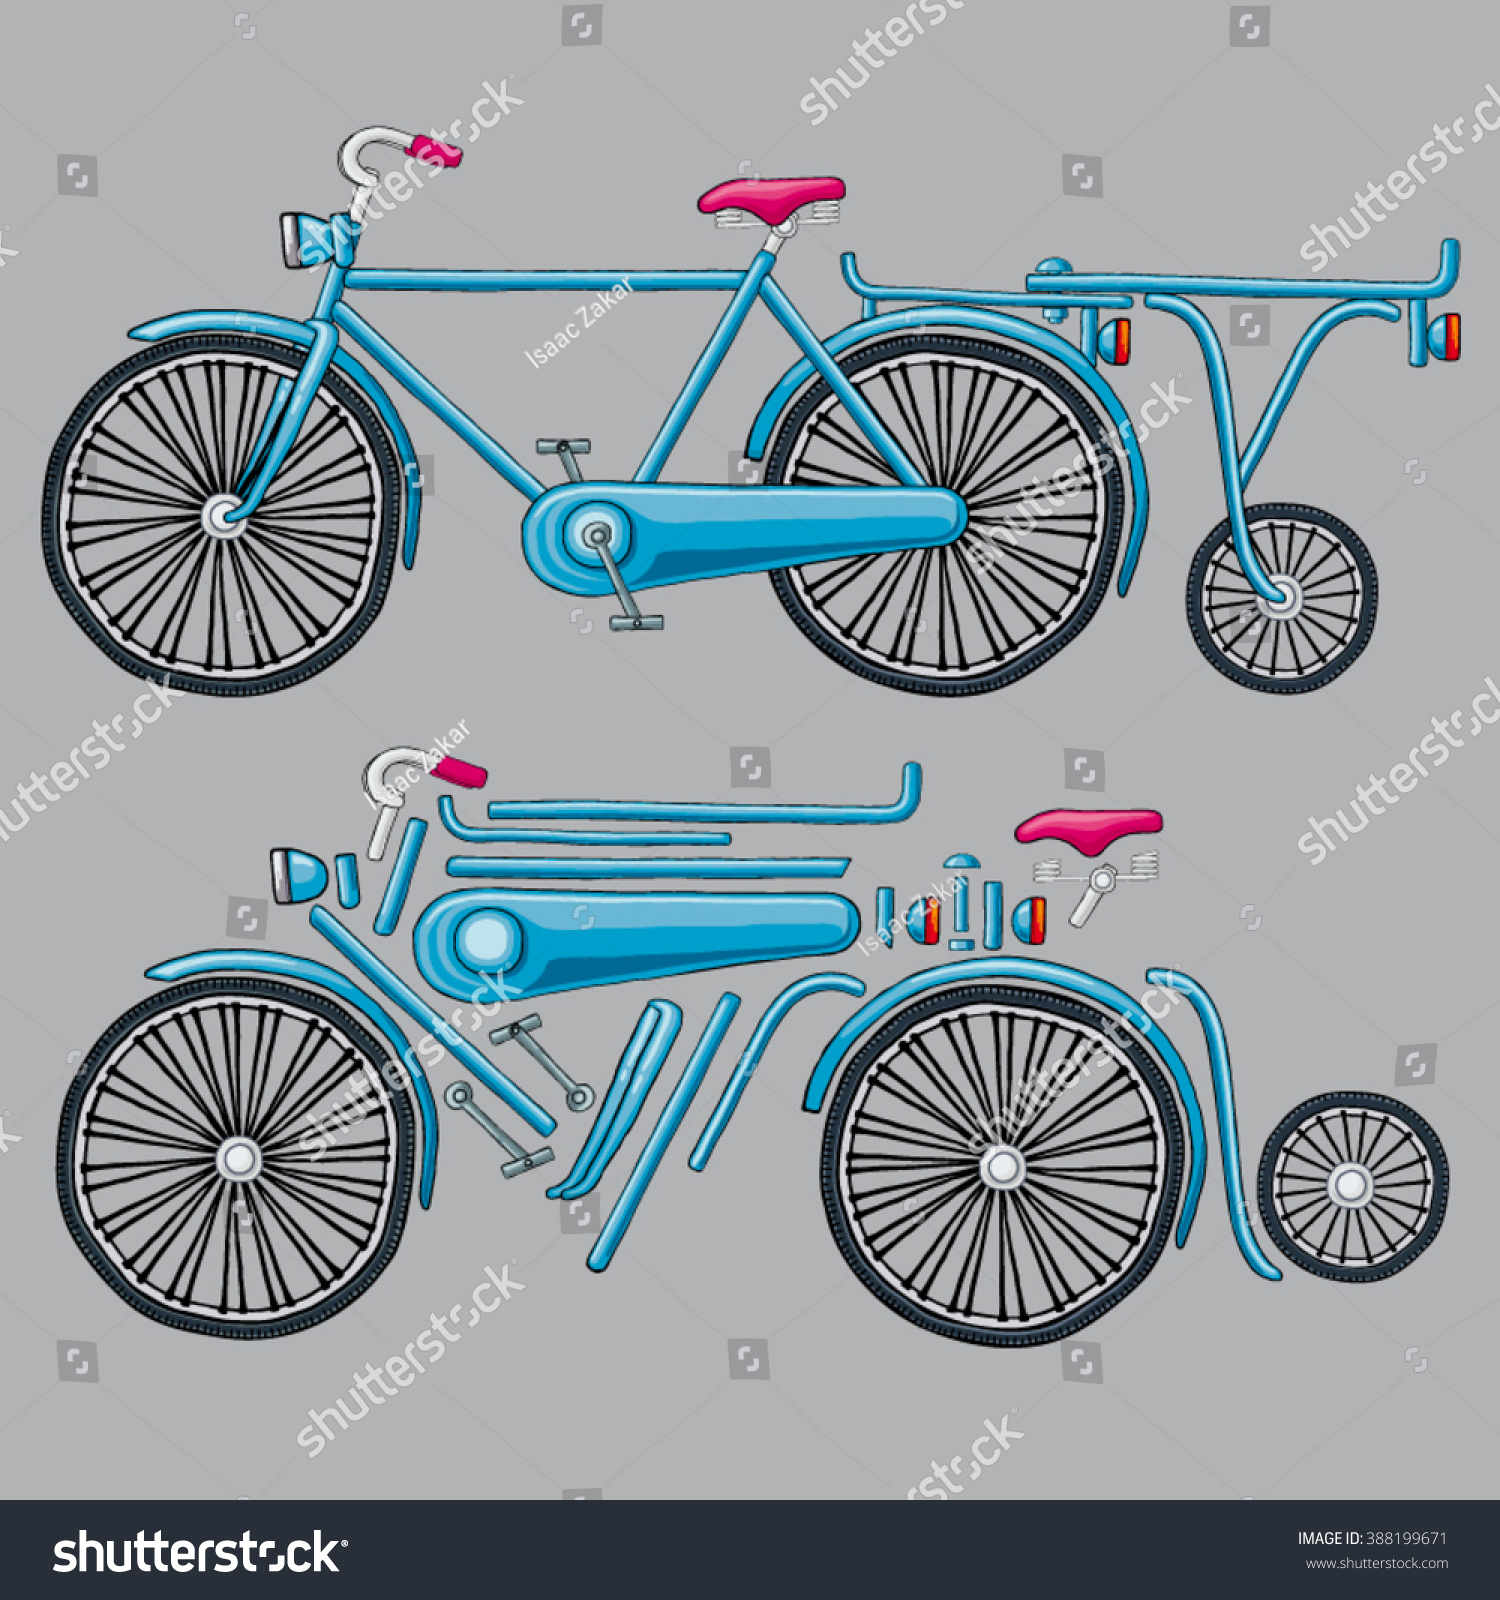 vintage bicycle parts